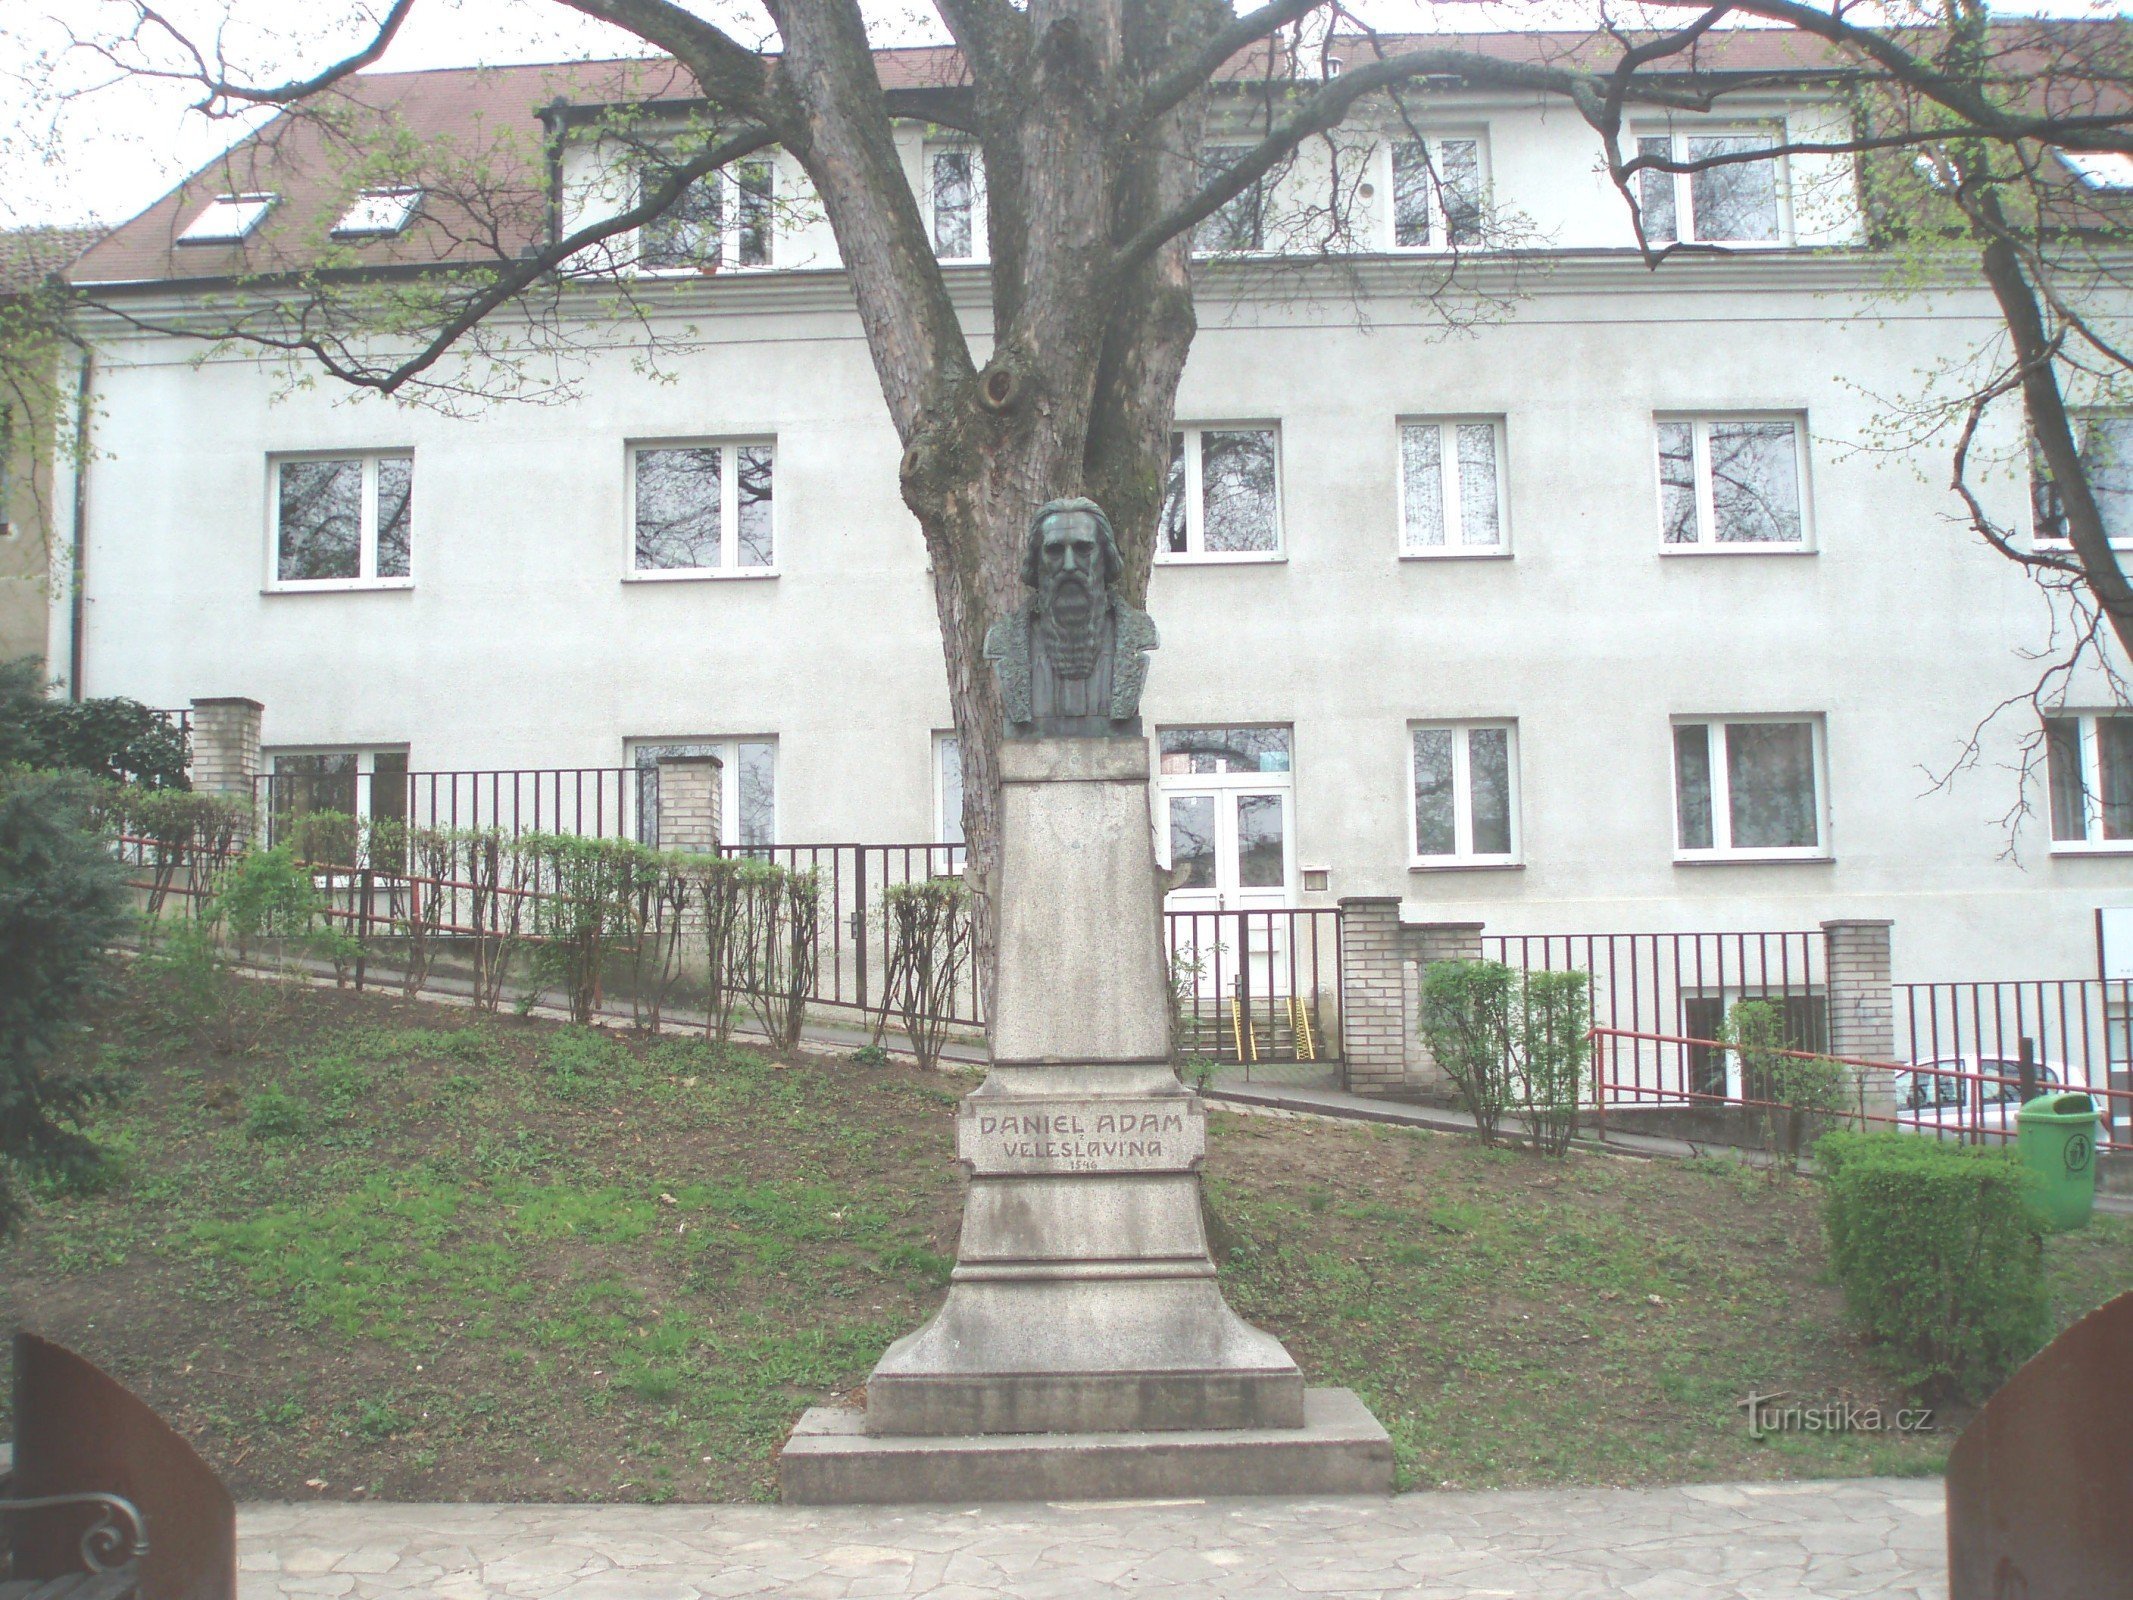 Monument til Daniel Adam fra Veleslavín